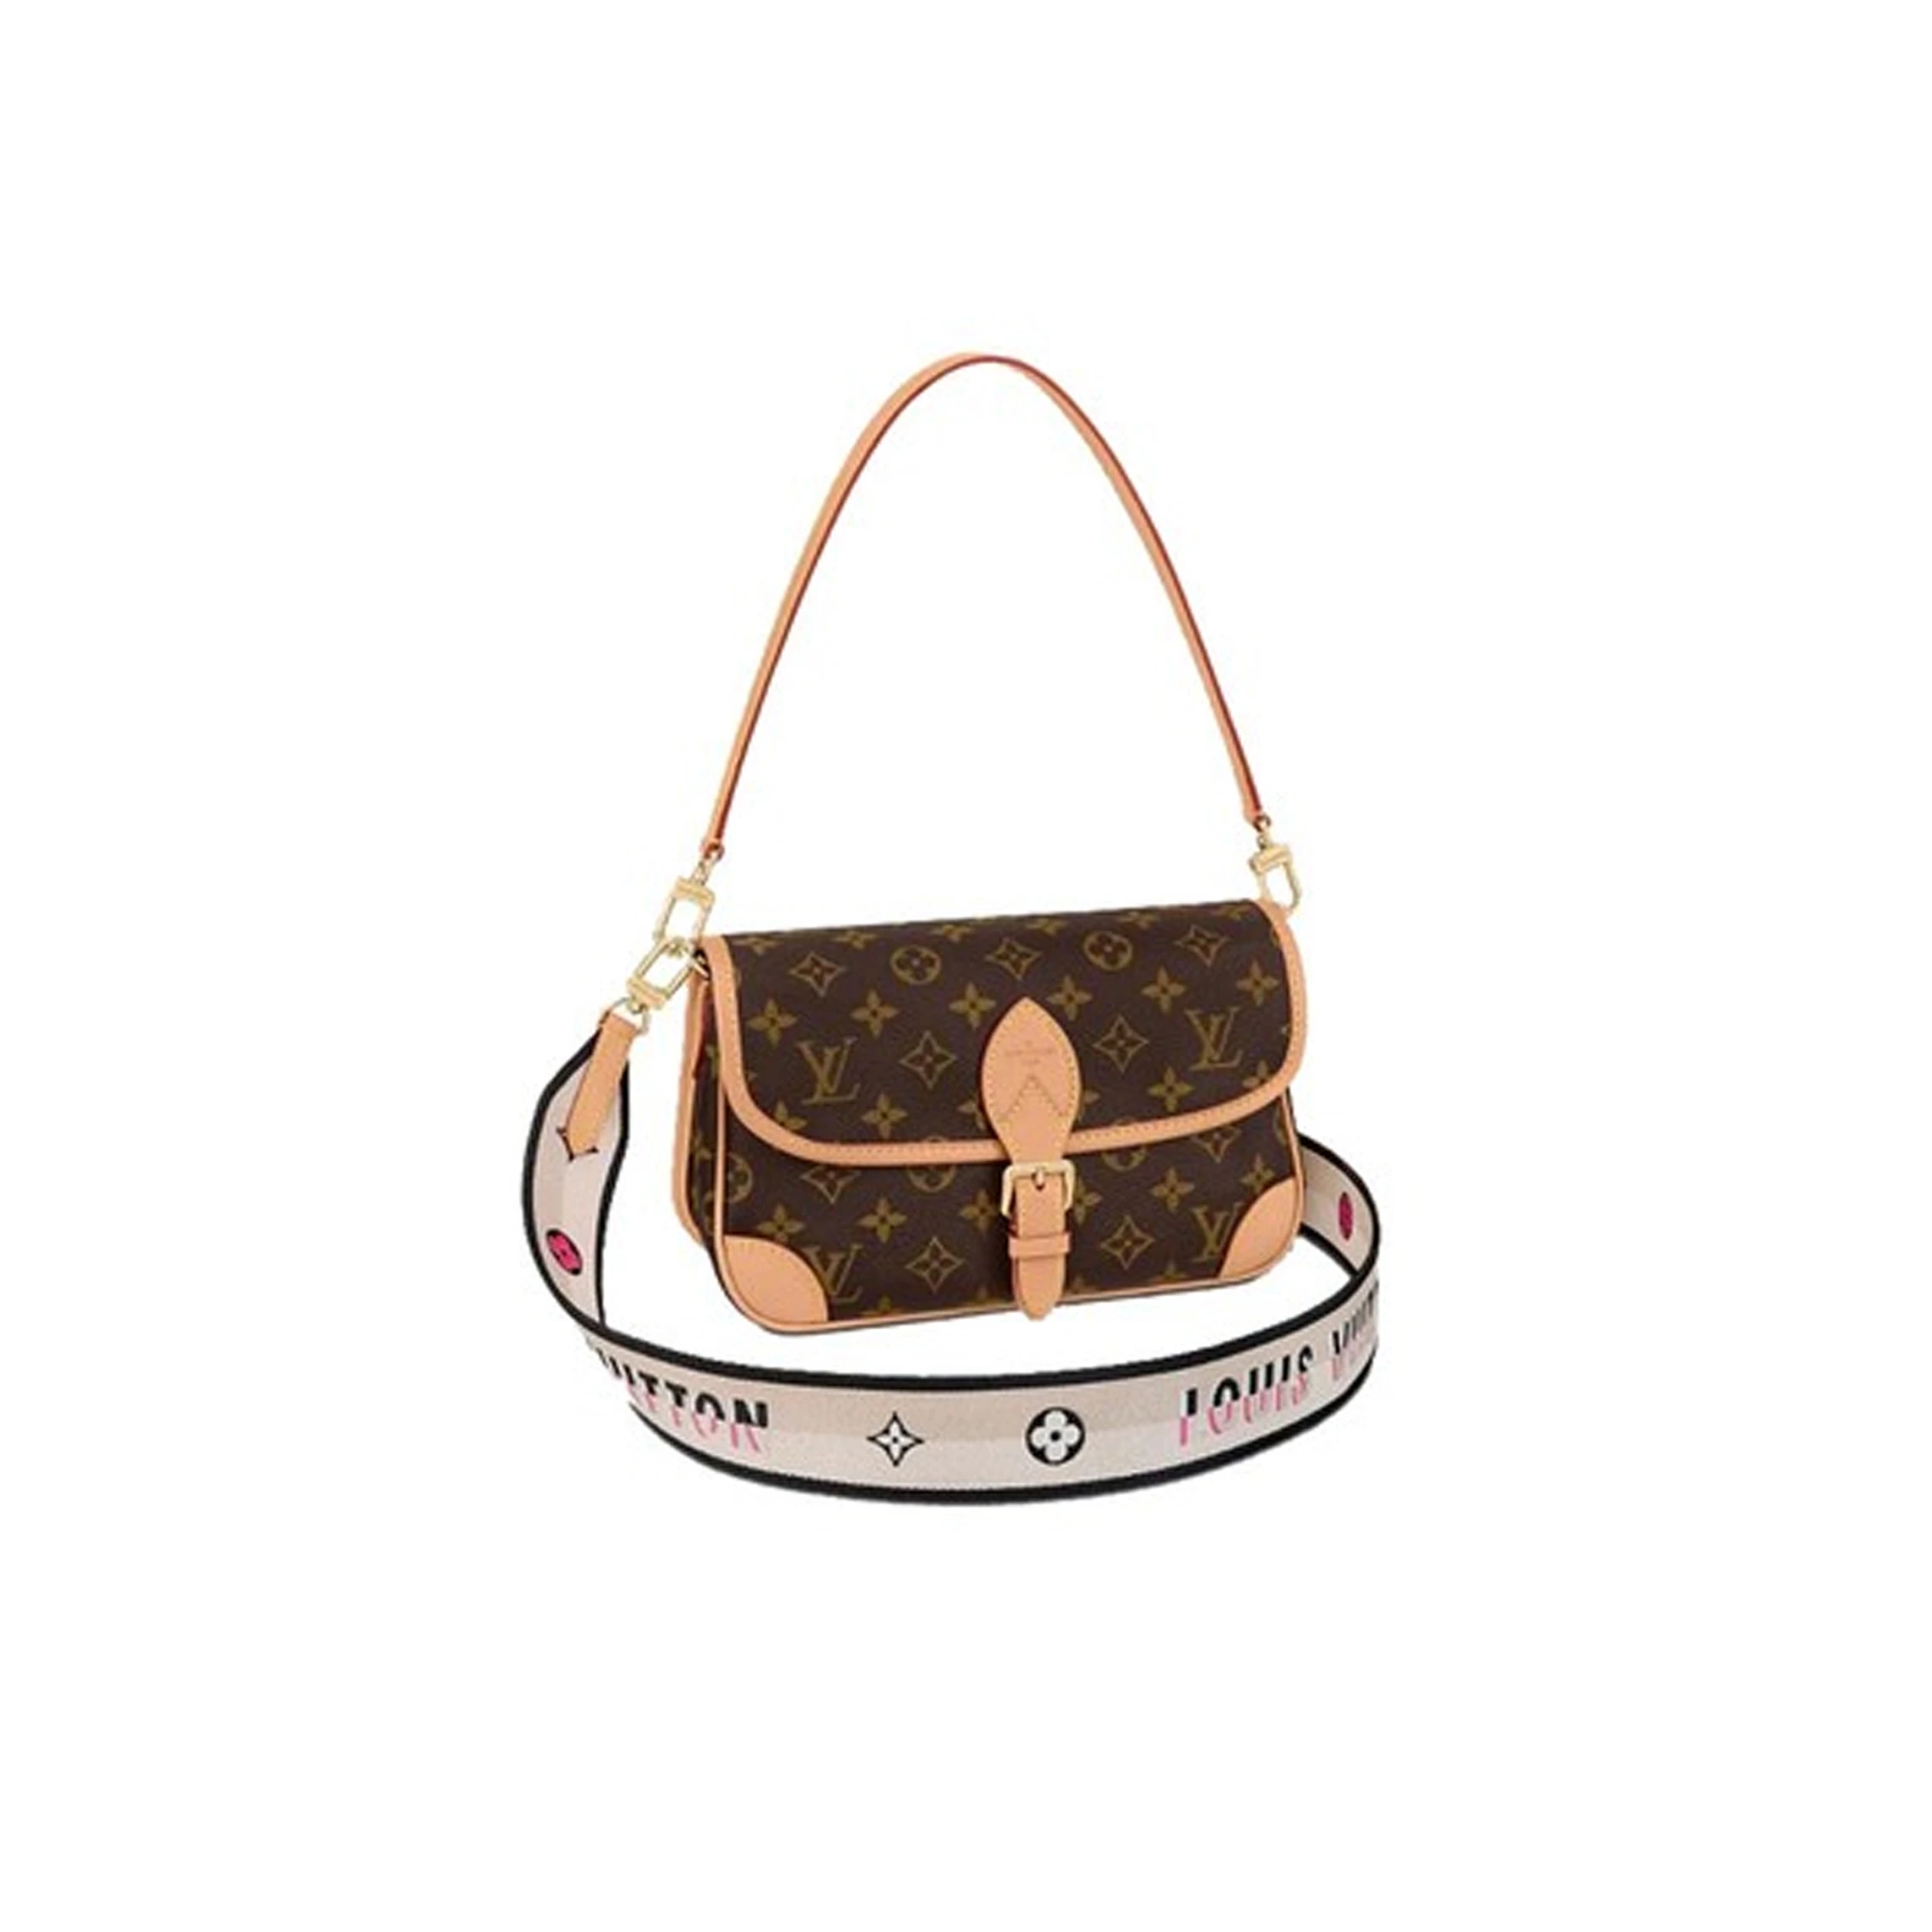 推荐Louis Vuitton/路易威登 DIANE 女士手袋单肩包双肩带 M45985 送礼好物商��品